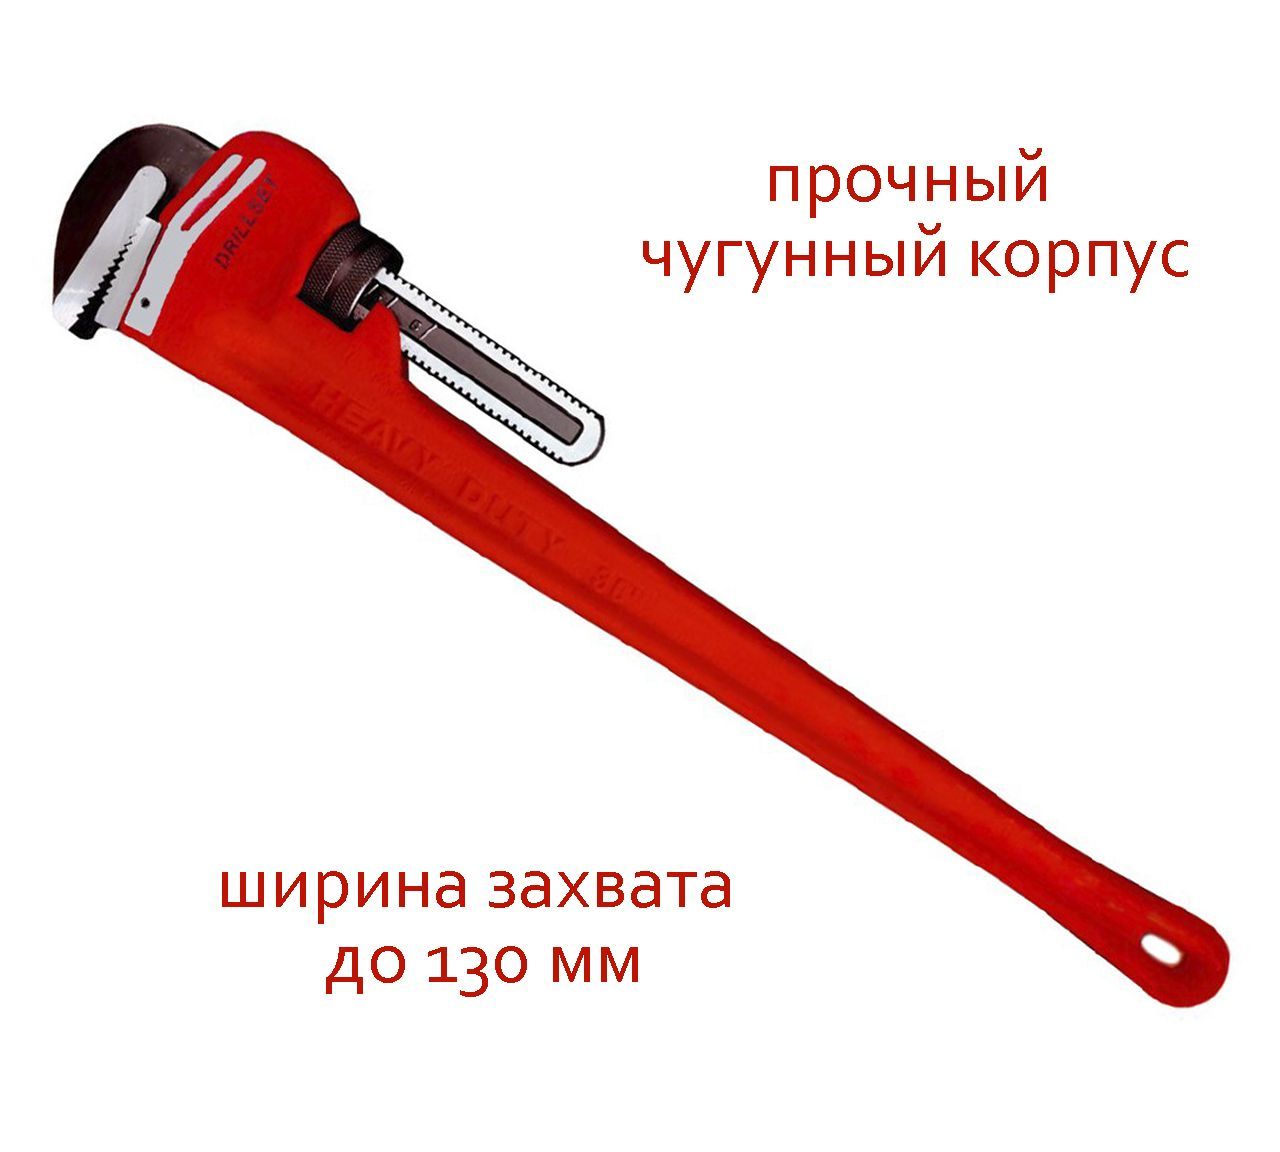 Прямой трубный ключ DRILLSET 36 DS270336, ширина захвата до 130 мм, из чугуна и стали трубный глухой метчик русский инструмент